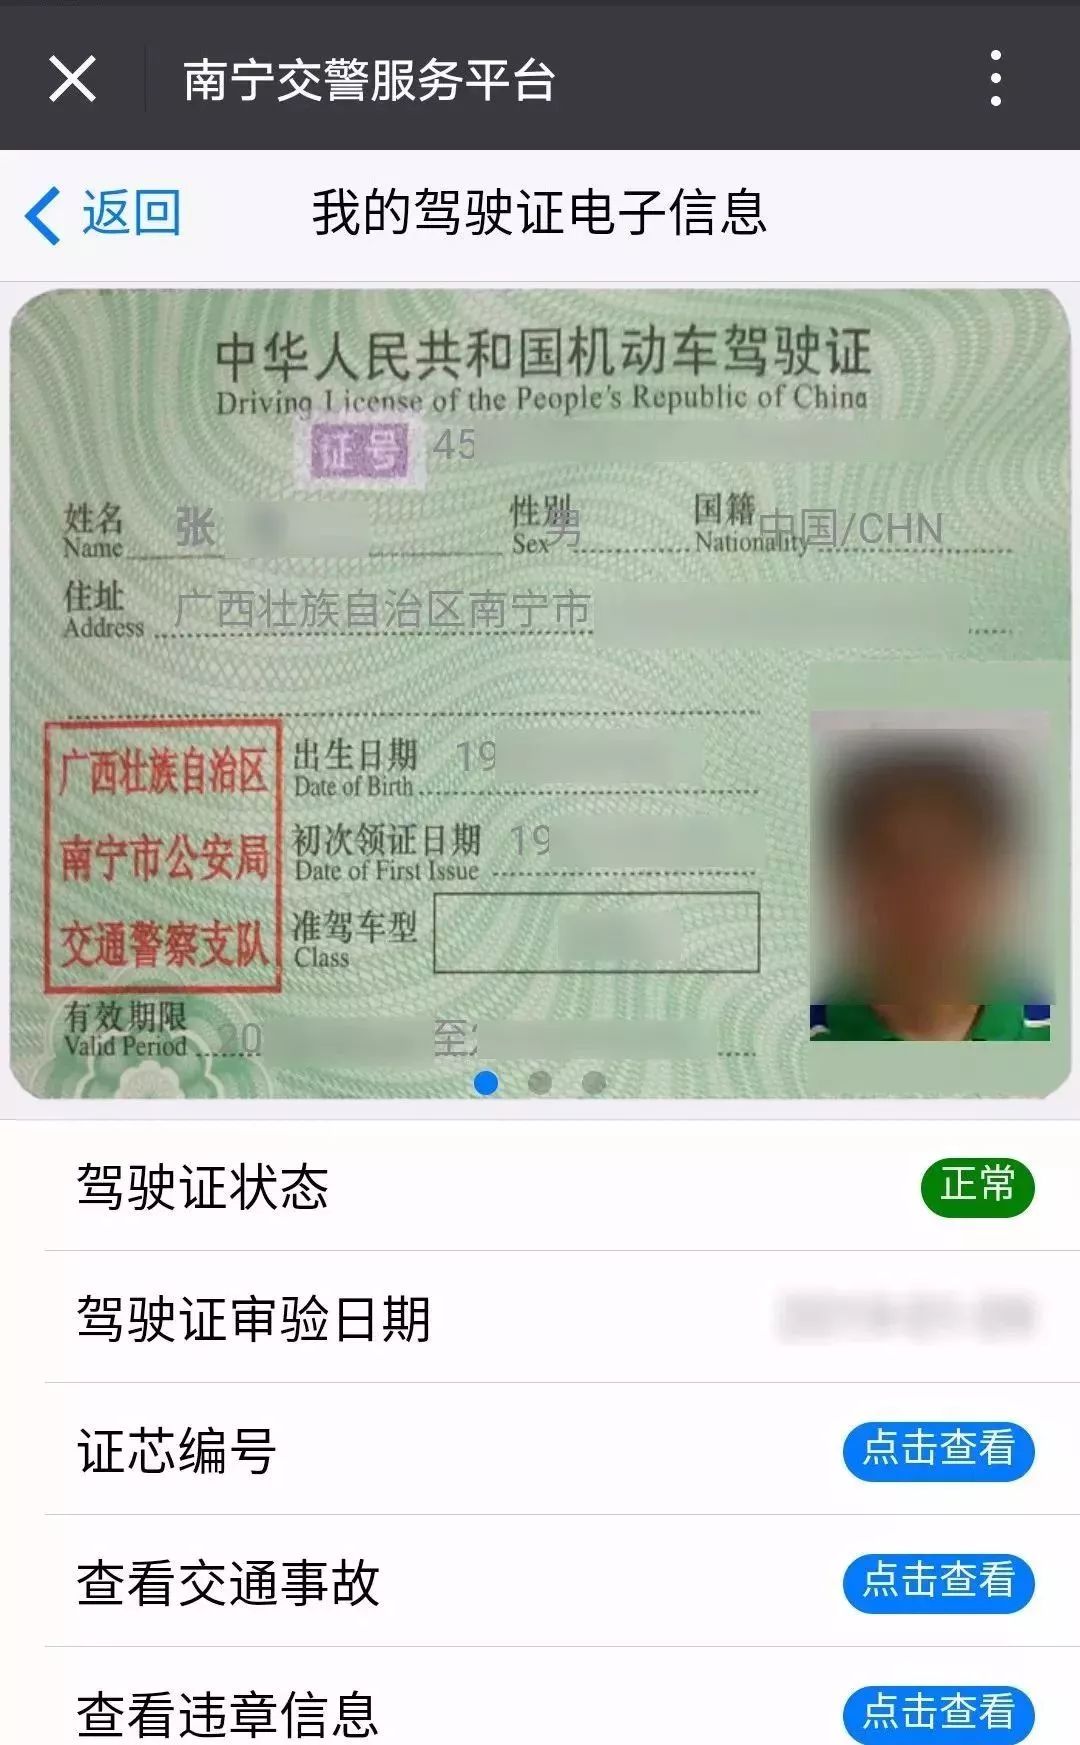 74下载 爱南宁app南宁地区各位老司机可通过直接出示电子驾驶证!